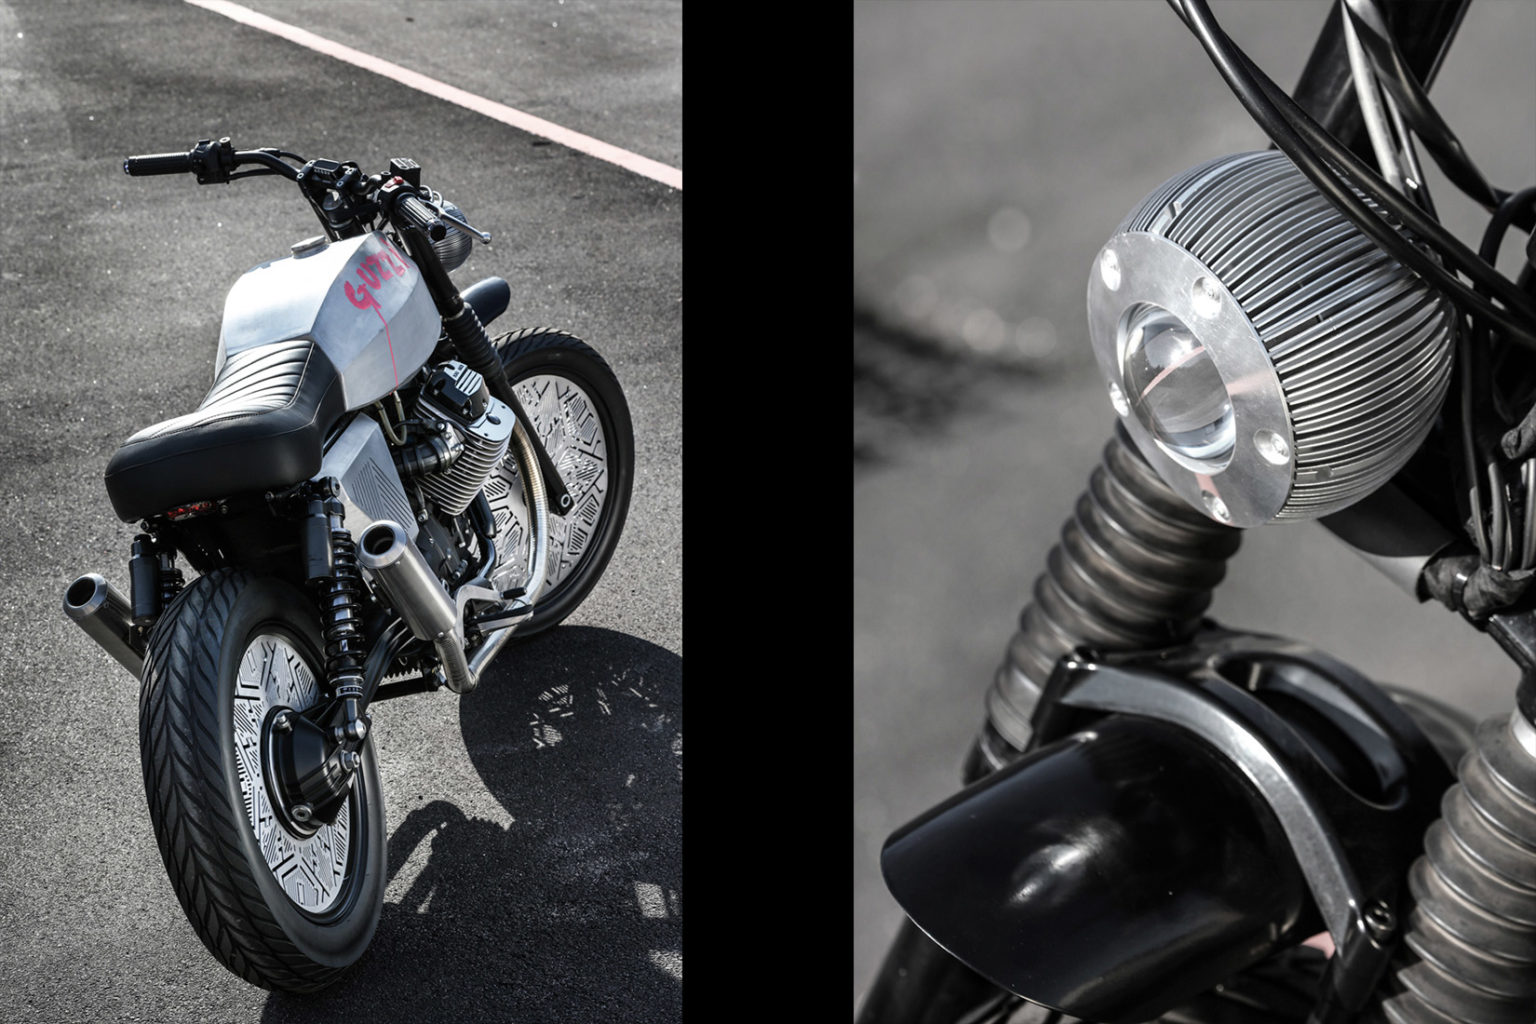 Moto Guzzi V7 "Tomoto" by Venier Motorcycles